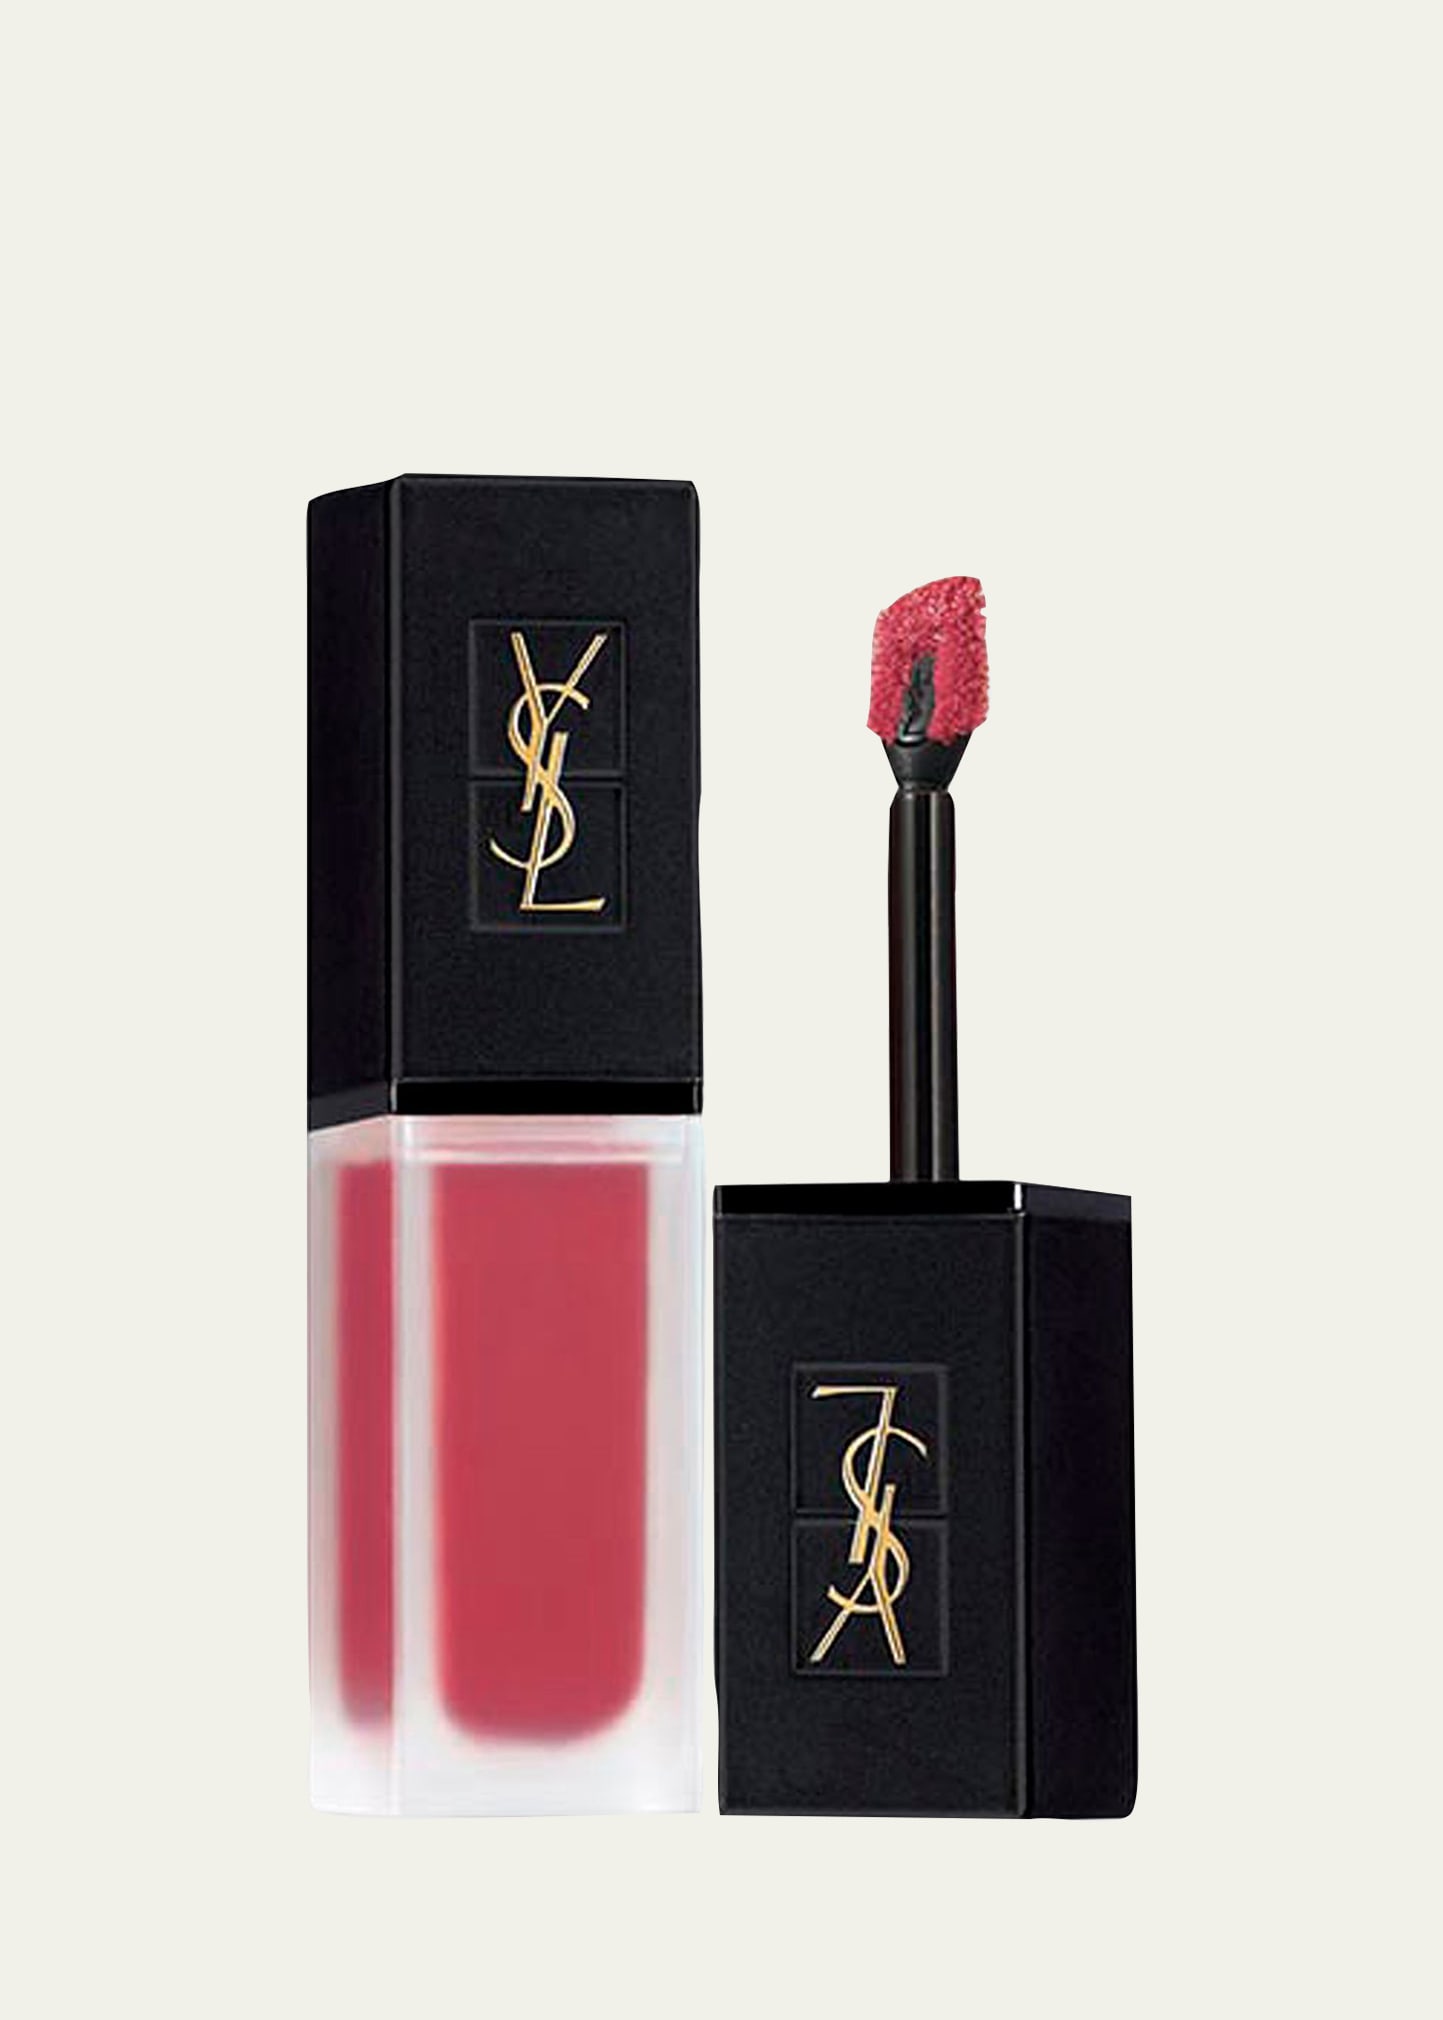 Saint Laurent Tatouage Couture Velvet Cream Liquid Lipstick In 216 Nude Emblem